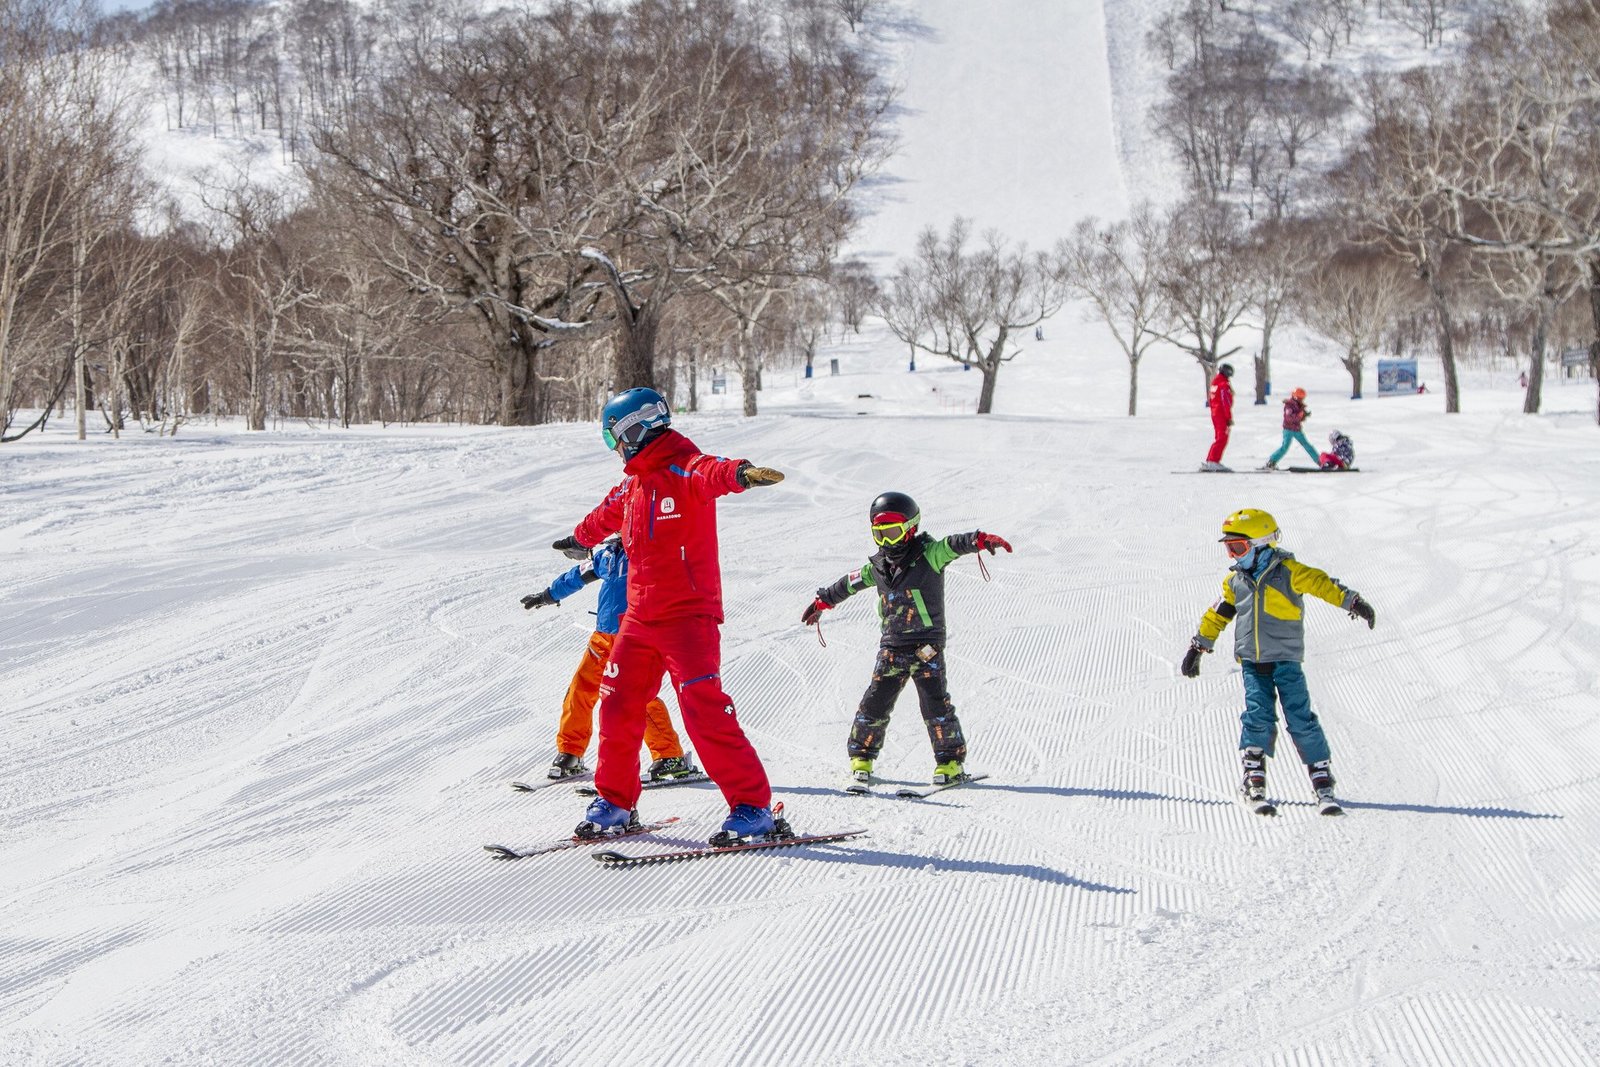 kids skiers having fun on slope